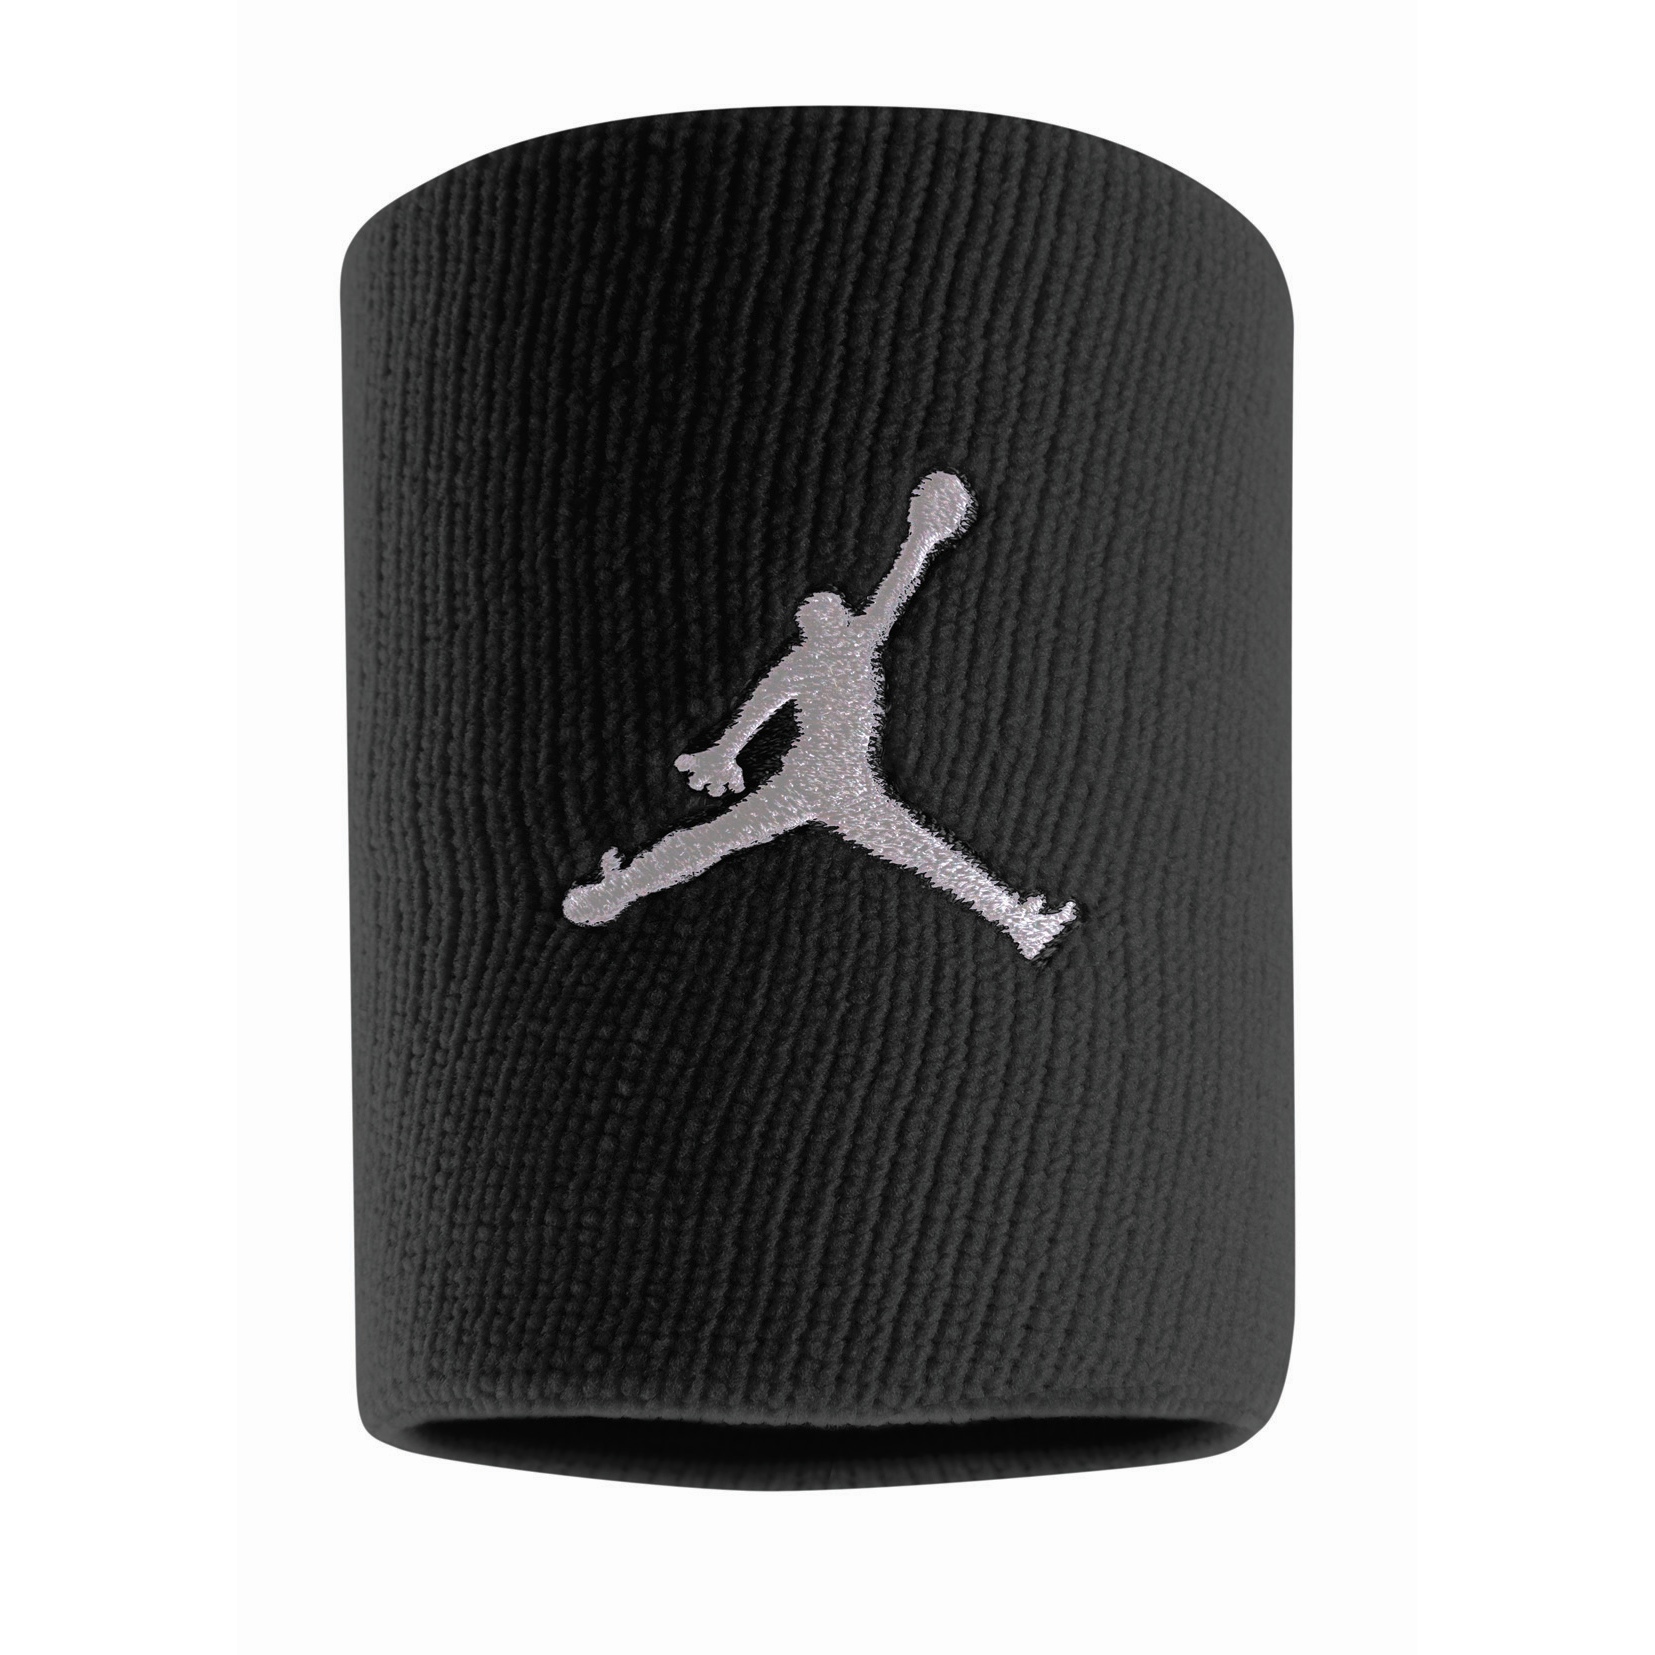 Productfoto van Nike Jordan Jumpman Zweetpolsband - black/white 010